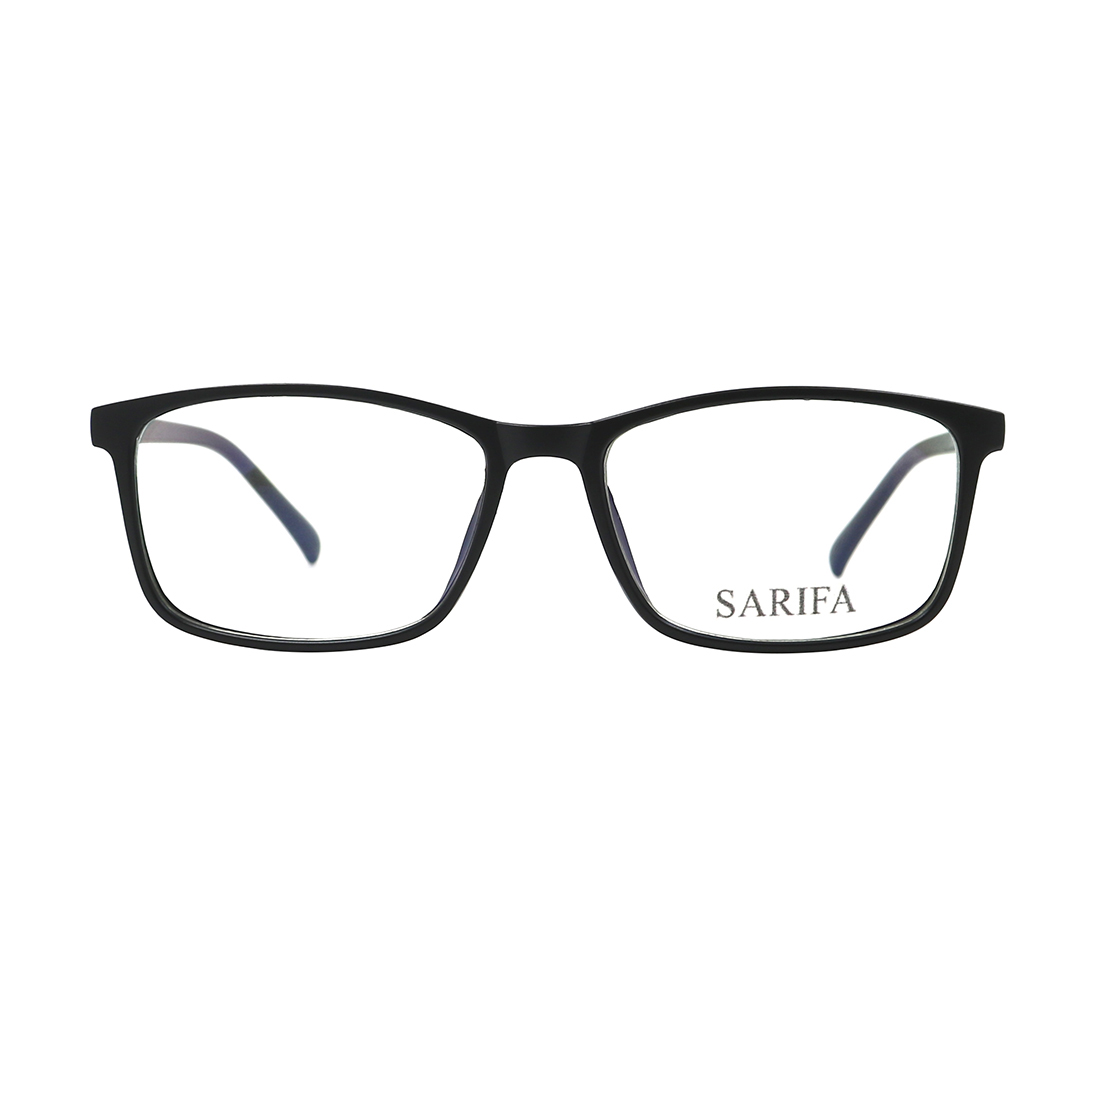 Gọng kính, mắt kính SARIFA 2392 (54-15-141) nhiều màu lựa chọn, thích hợp làm kính cận hoặc kính thời trang